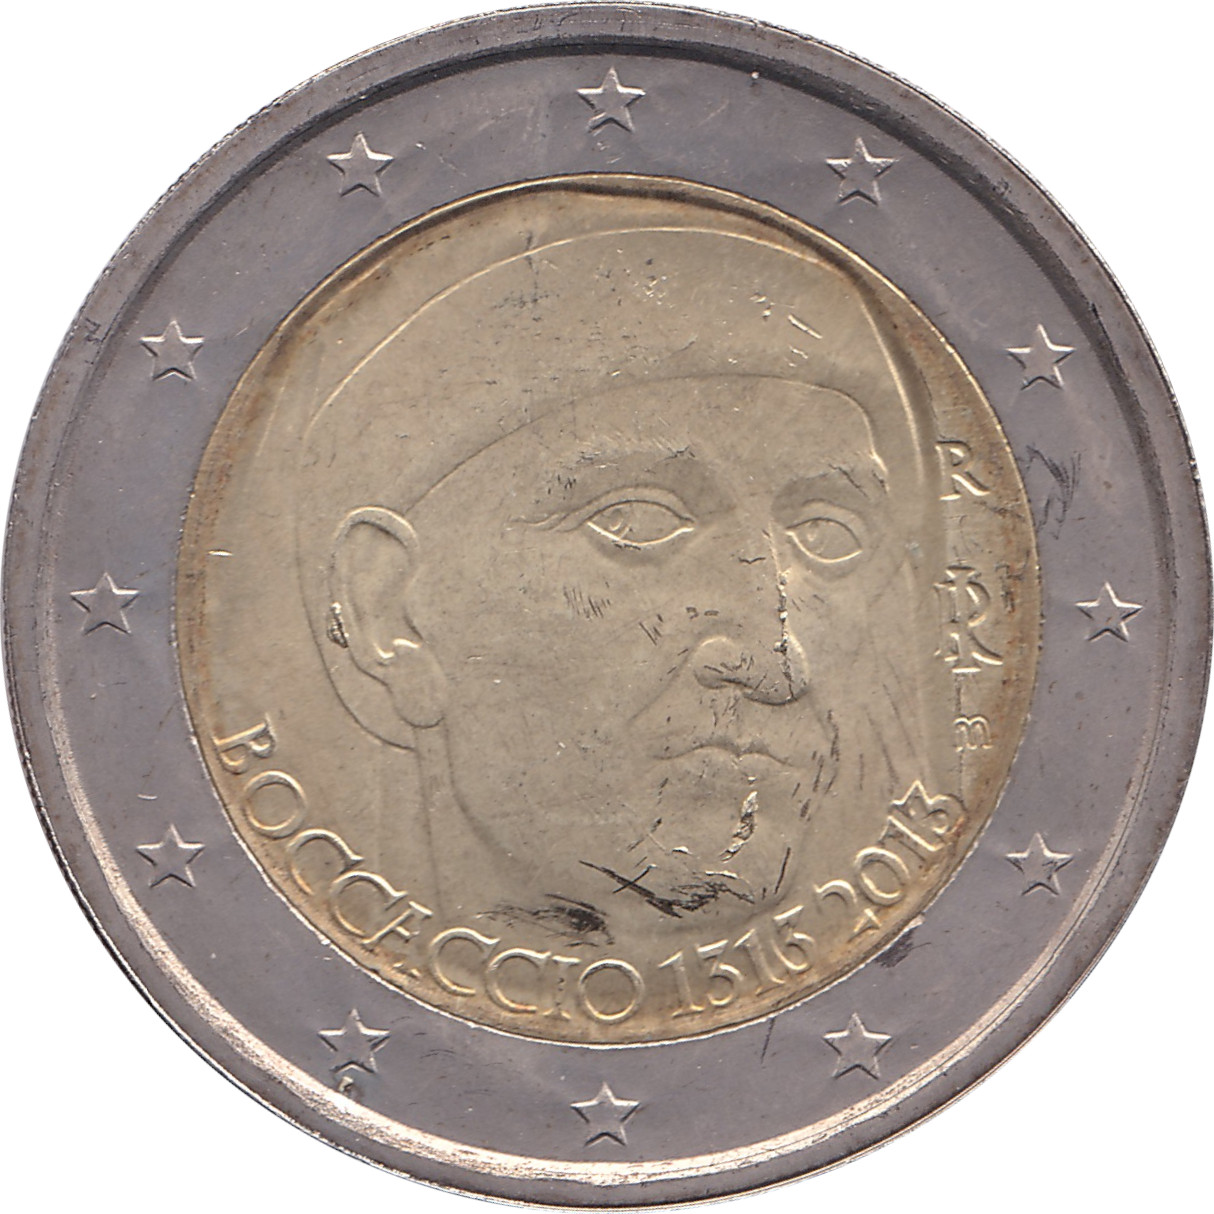 2 euro - Giovanni Boccaccio